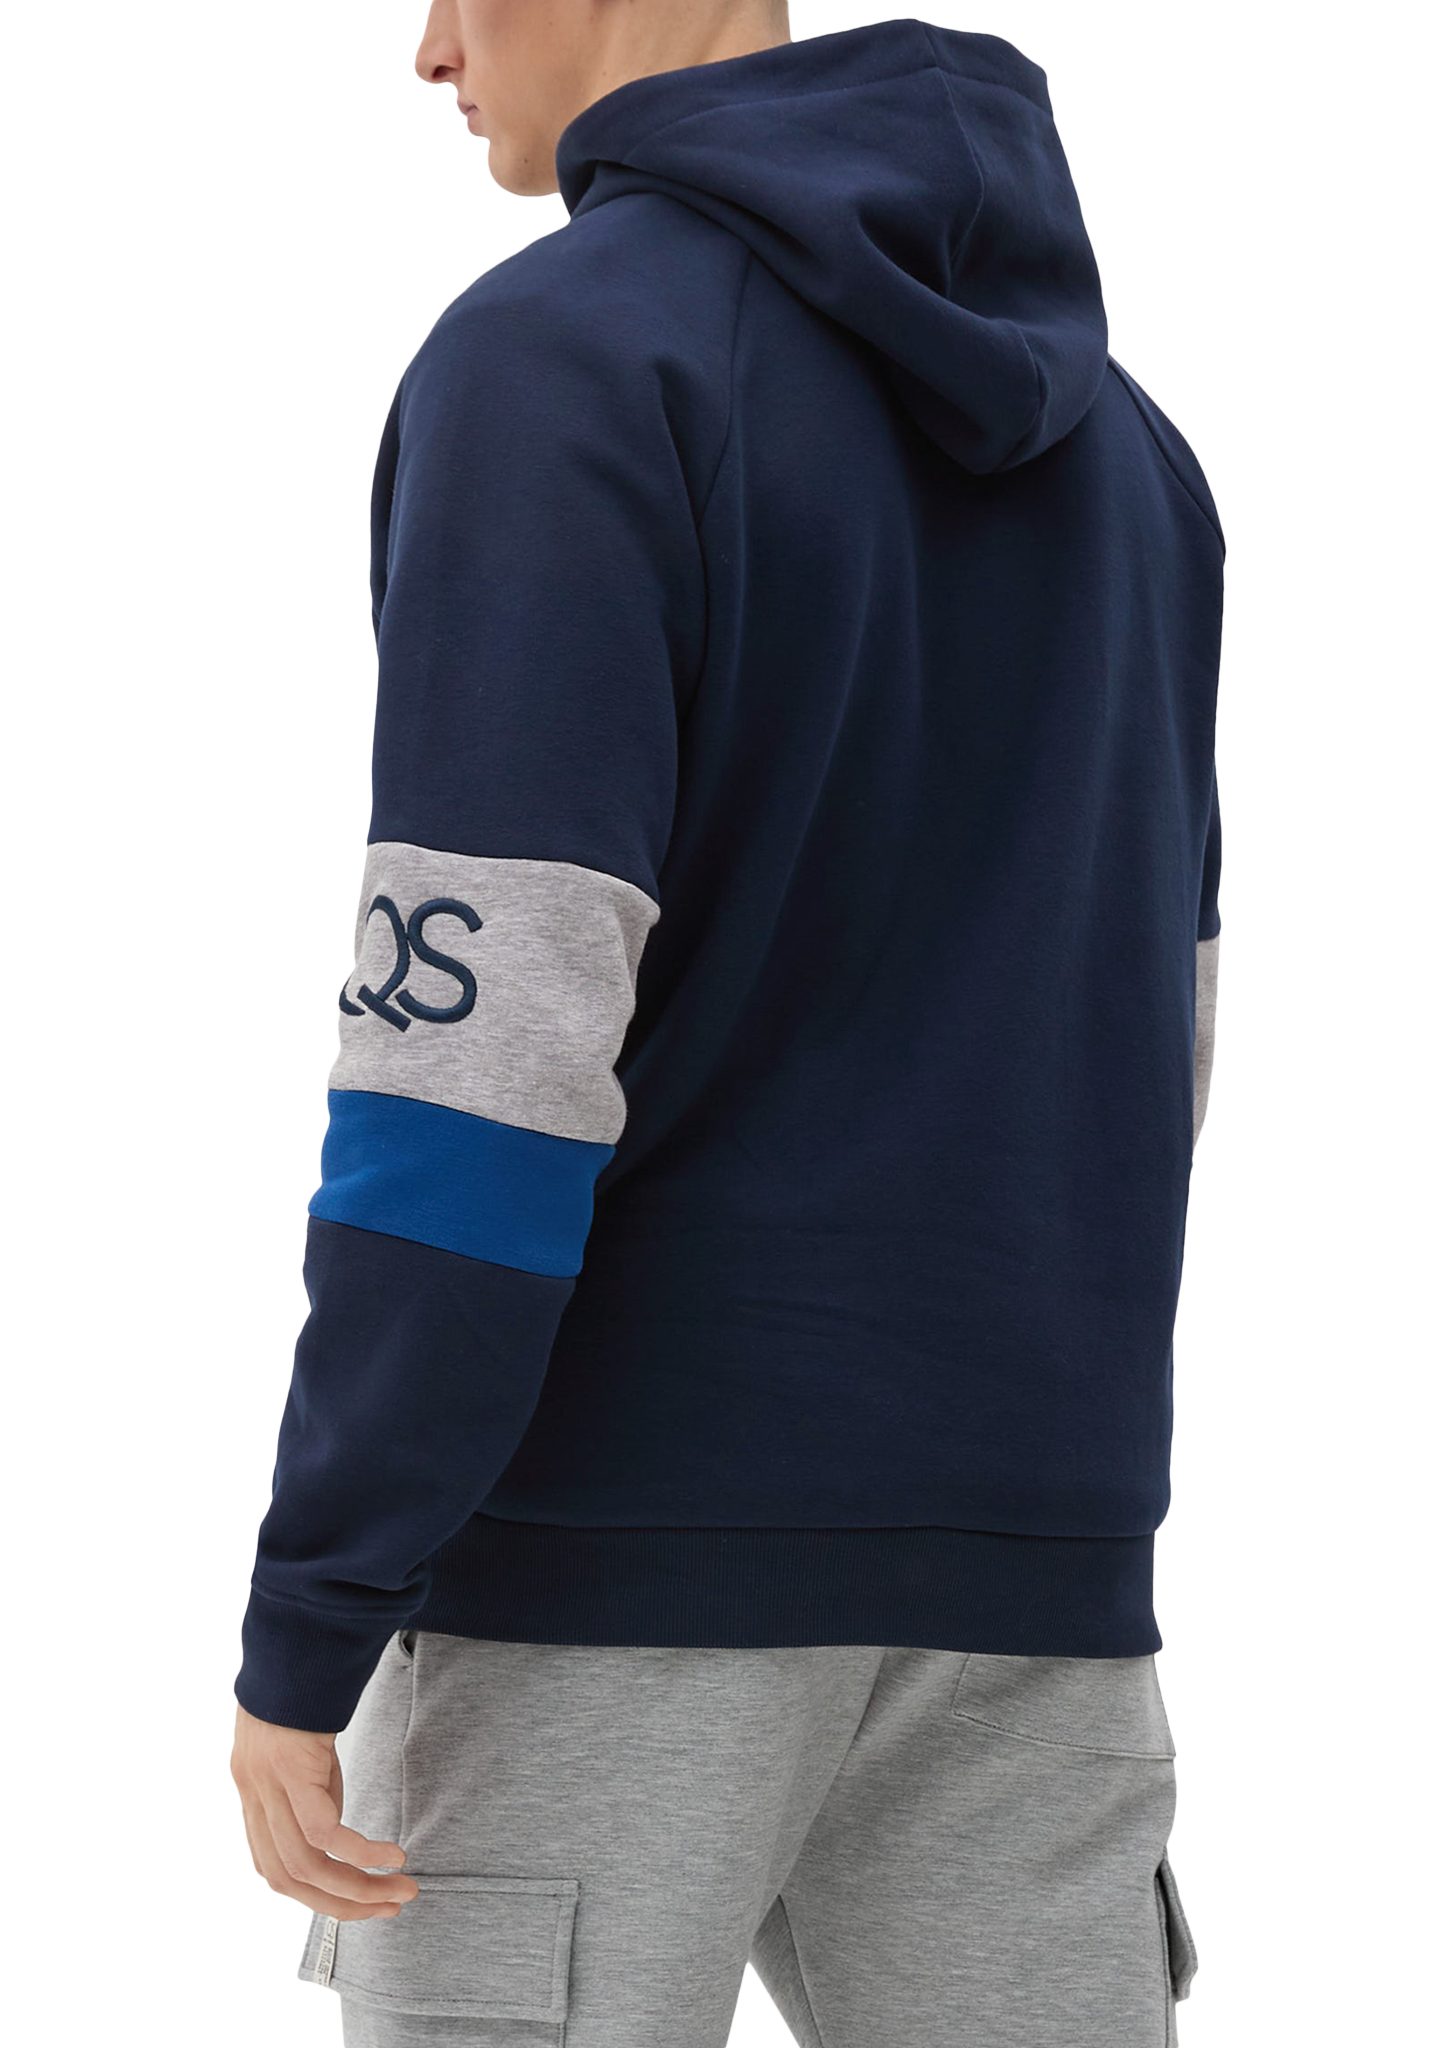 Sweatshirt Stickerei, Sweatshirt navy Label-Patch QS Labelstickereien mit